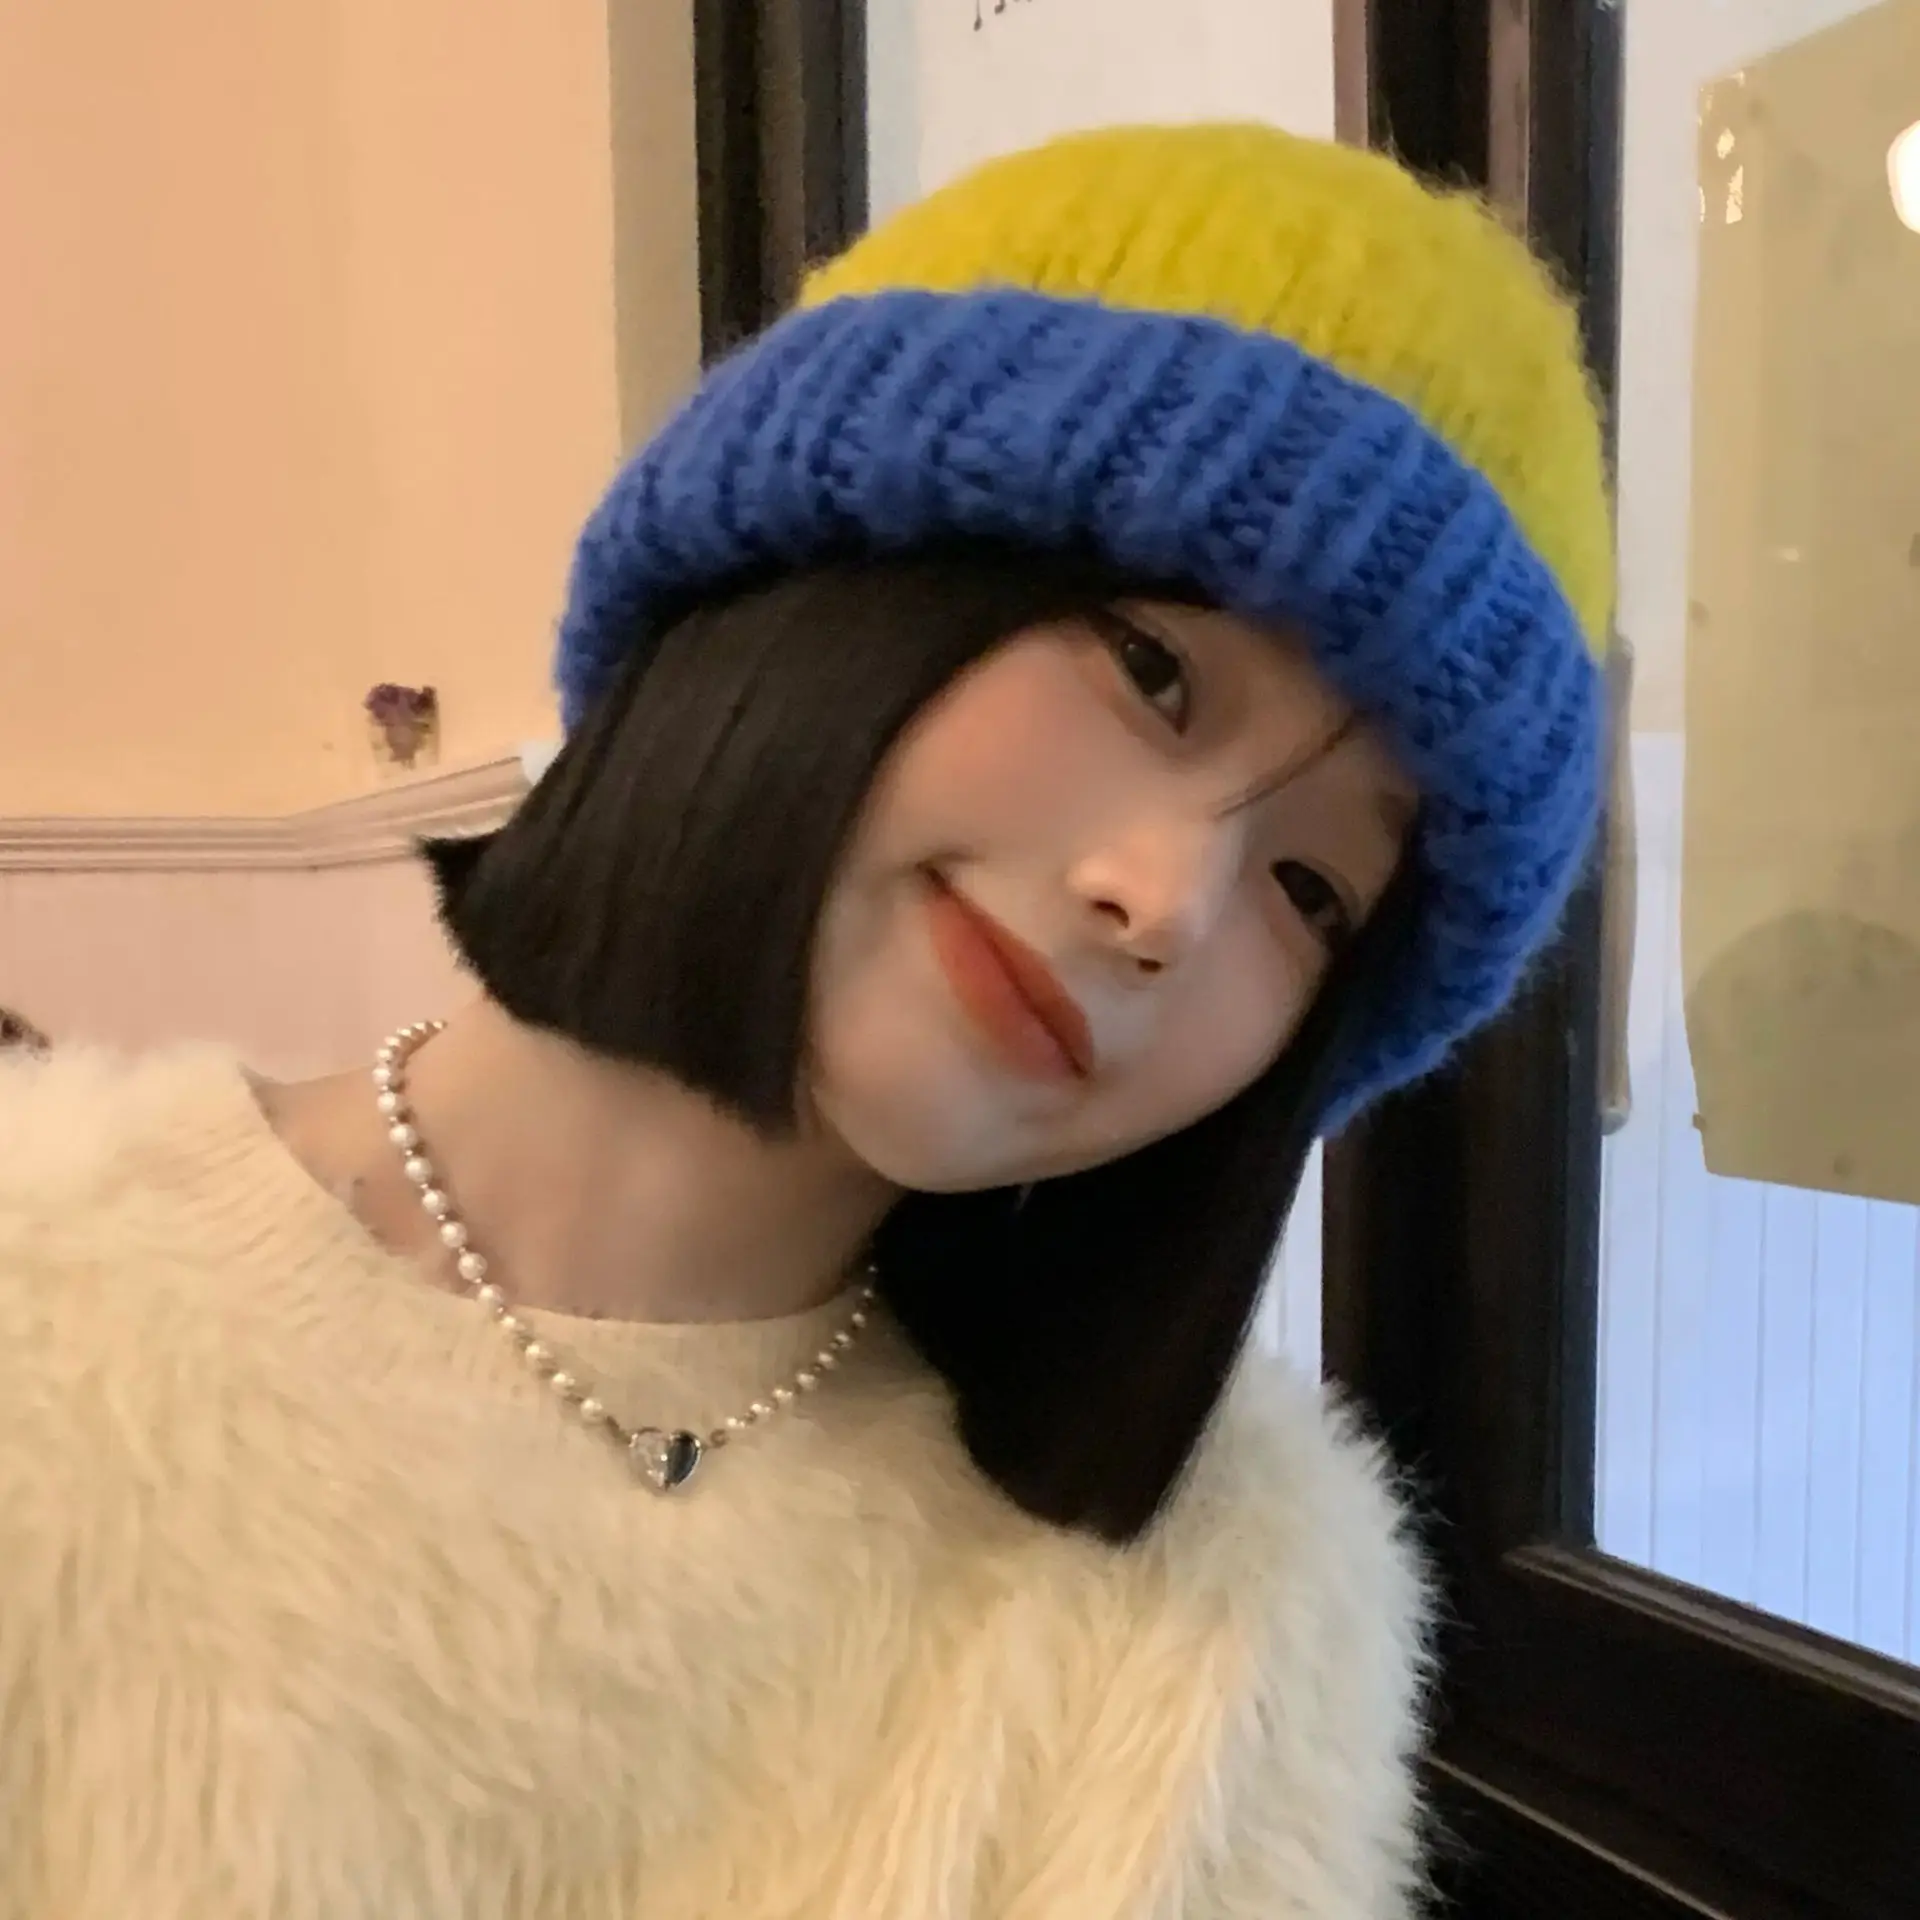 Sonbahar ve Kış Kalın Yün Şapka kadın Büyük Kafa Bandı Çok Yönlü Sıcak Örme Şapka Renk Eşleştirme Şapka Moda